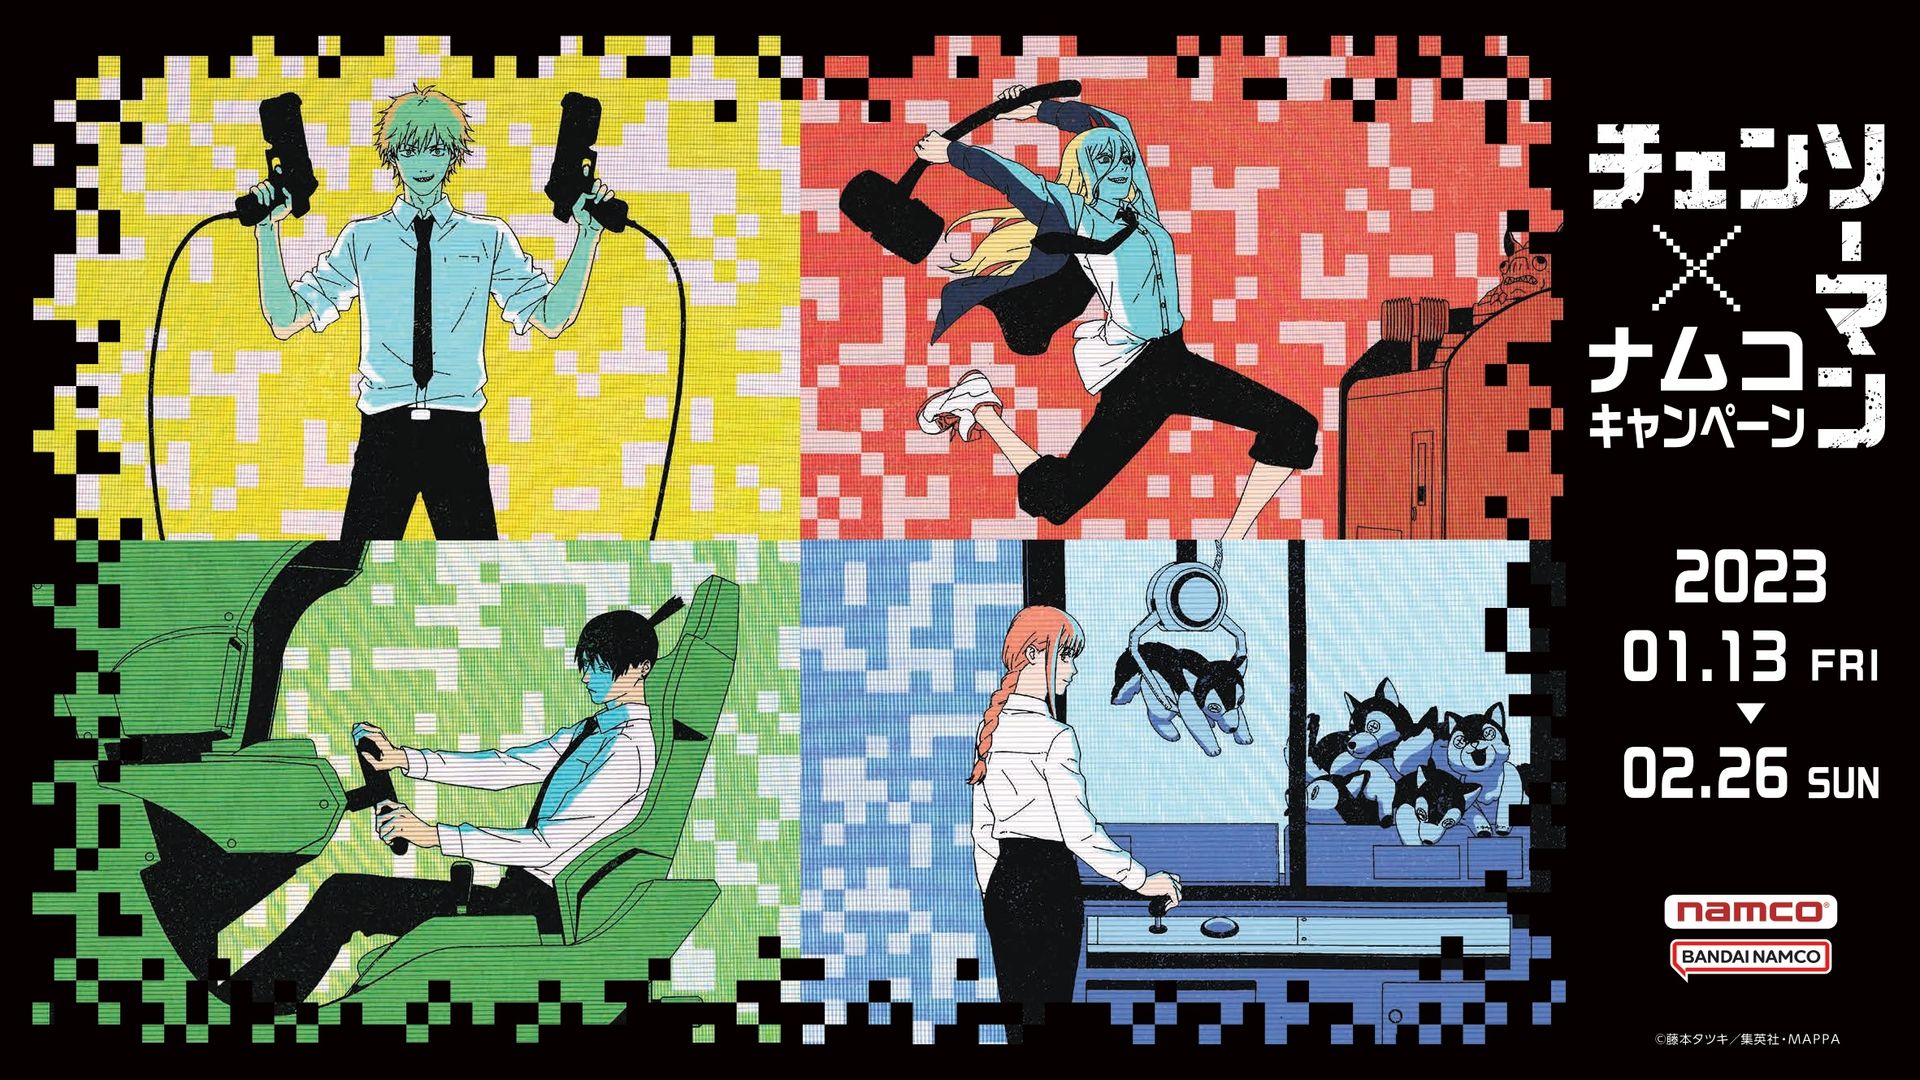 アニメ「チェンソーマン」とのコラボ企画がアミューズメント施設